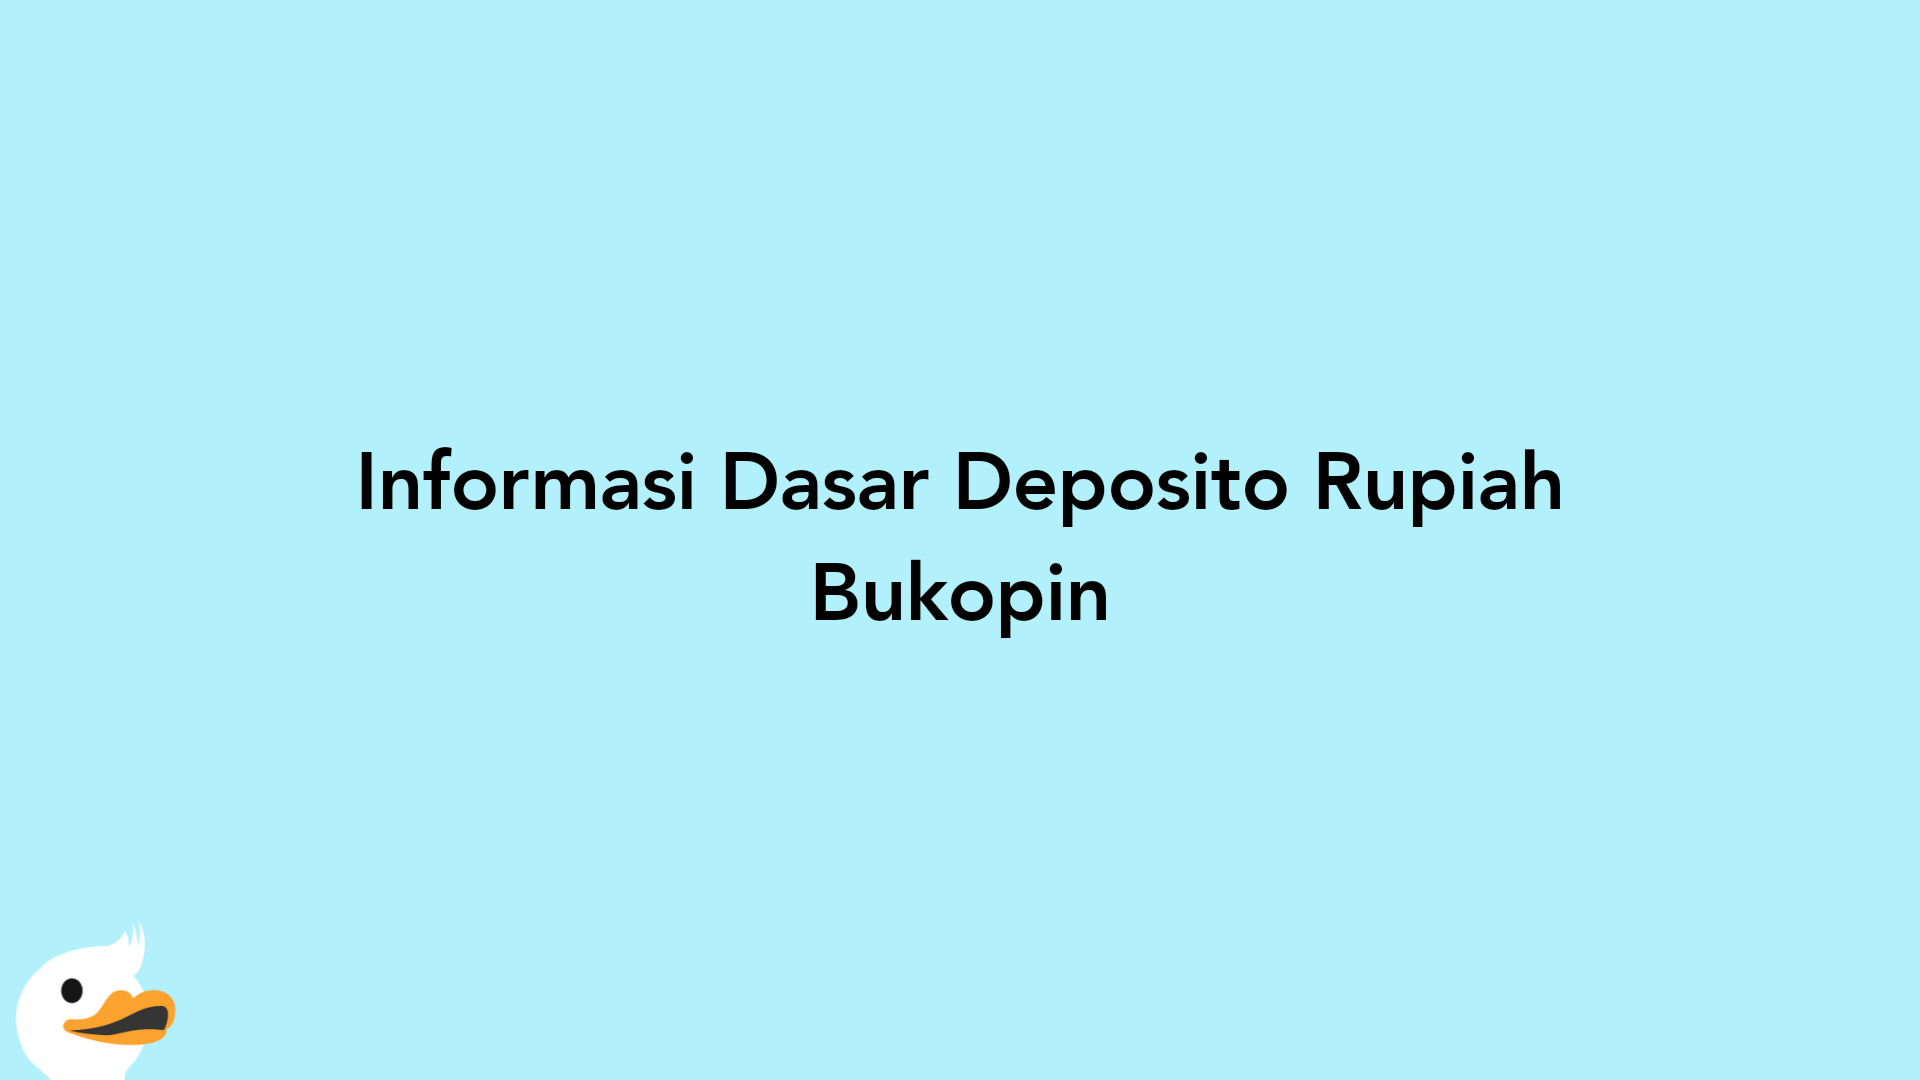 Informasi Dasar Deposito Rupiah Bukopin